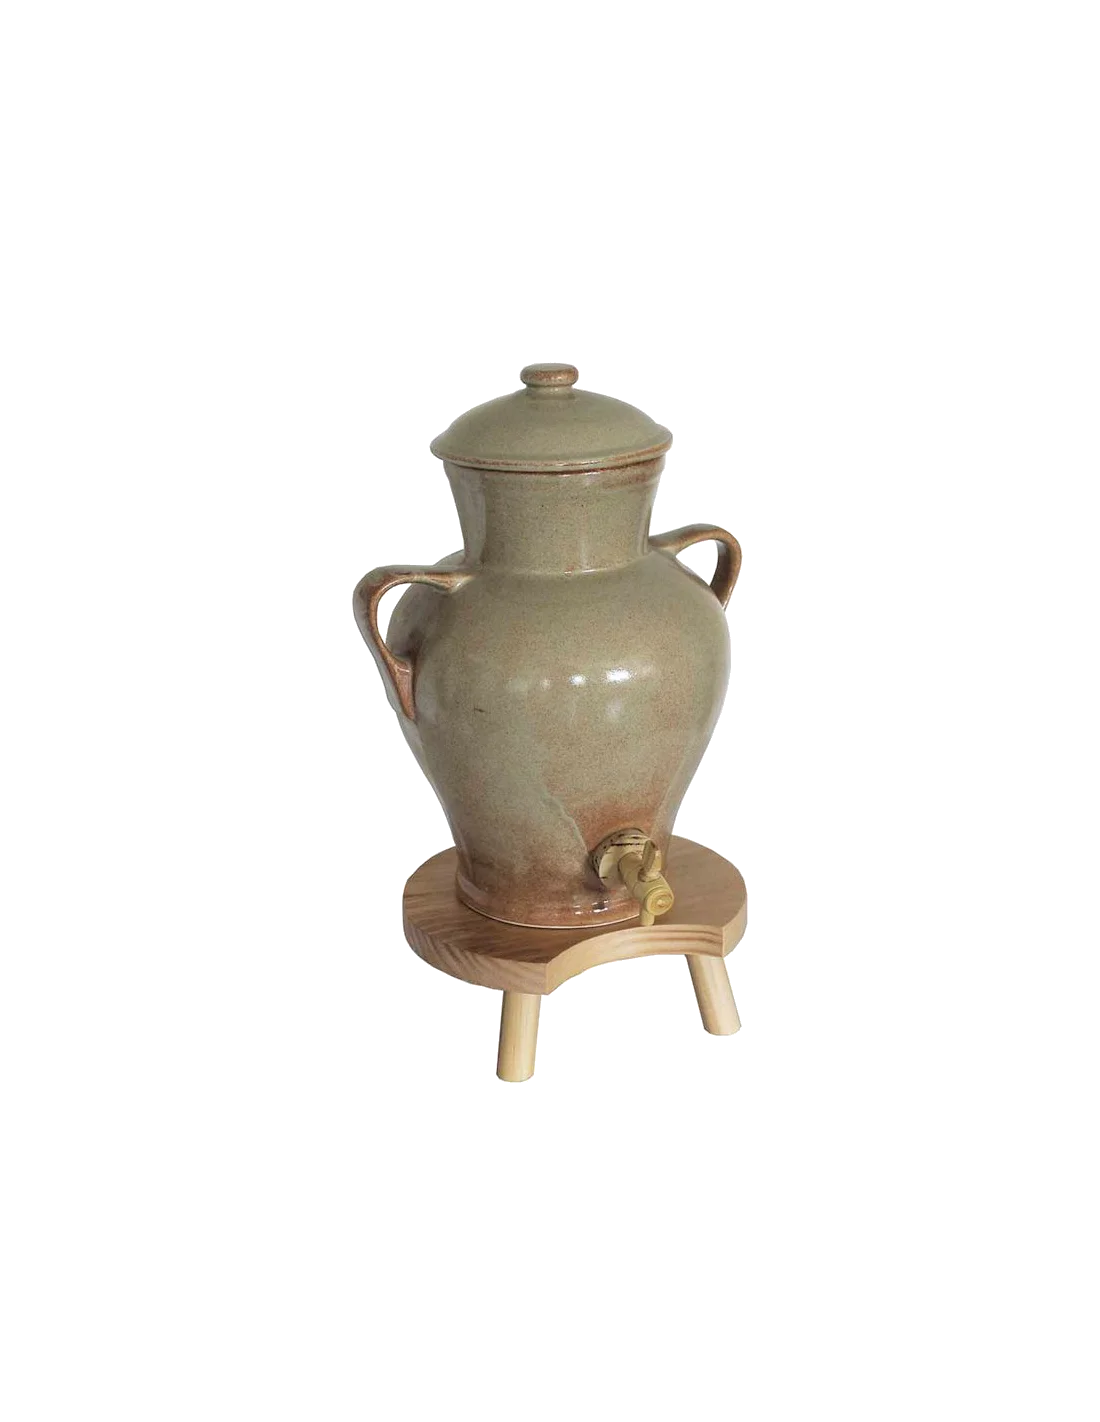 2.5 liter stoneware vinegar pot with wooden base